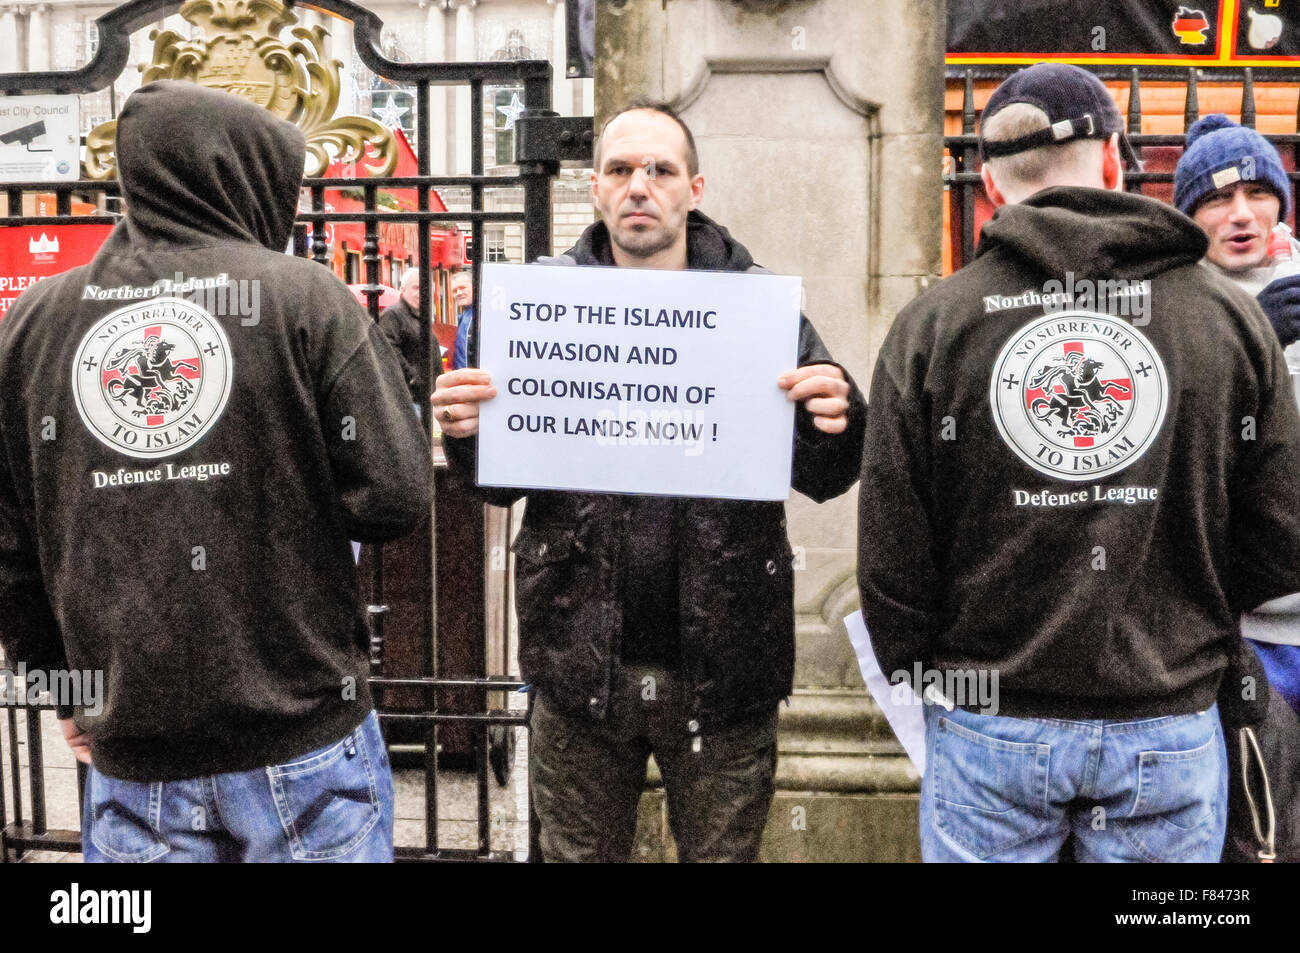 Belfast, Nordirland. 5. Dezember 2015 - ein Mann hält ein Plakat mit der Meldung "Stop der islamischen Invasion und Besiedlung unseres Landes jetzt!" während die beiden Männer tragen Hoodies mit dem Slogan "Northern Ireland Defence League.  Kein Verzicht auf den Islam ". Bildnachweis: Stephen Barnes/Alamy Live-Nachrichten Stockfoto